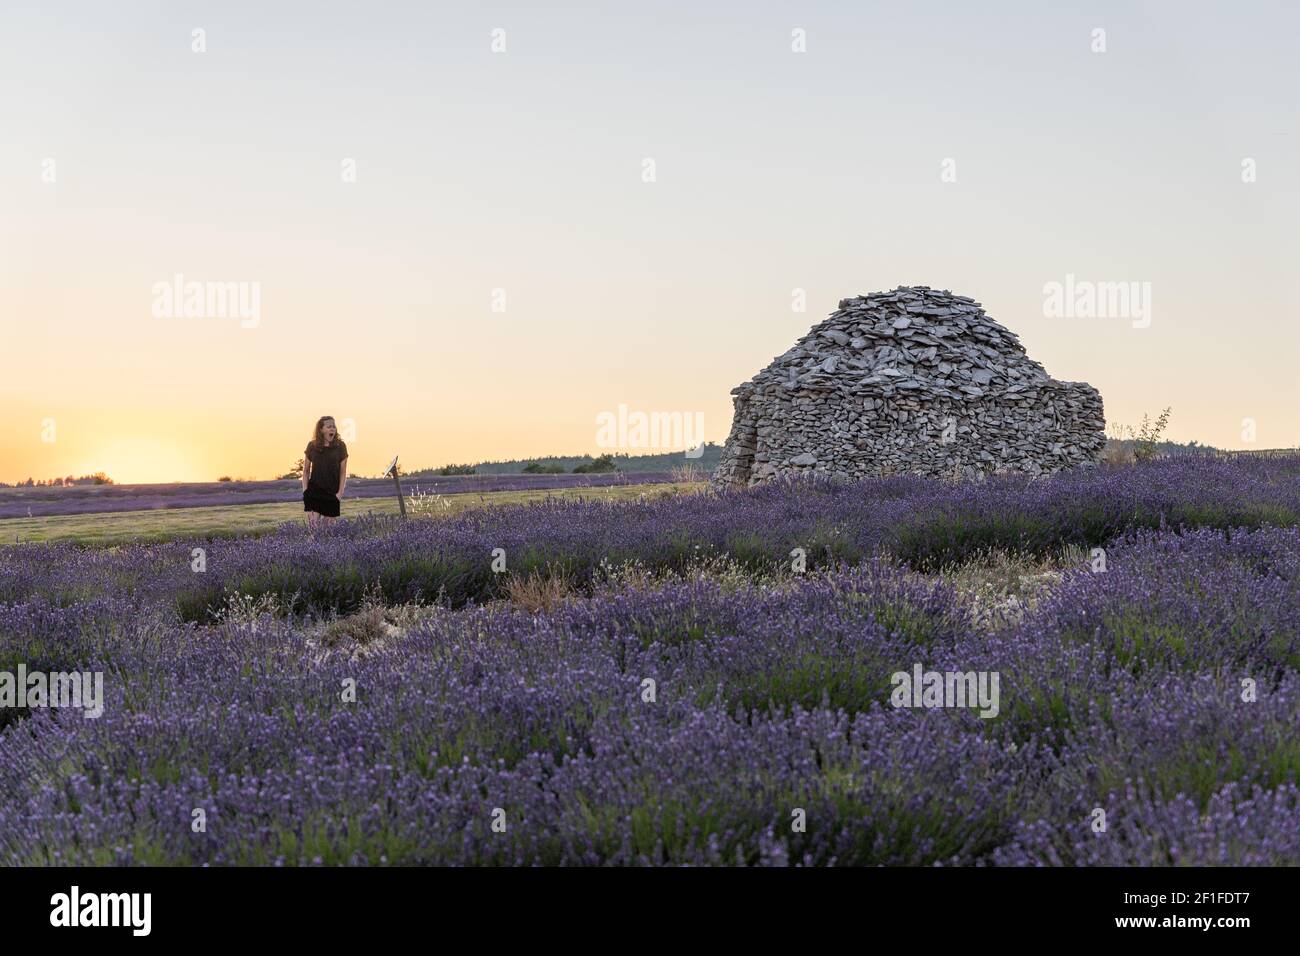 Maison ronde en pierre dans les champs de lavande en provence en France, Europe Banque D'Images